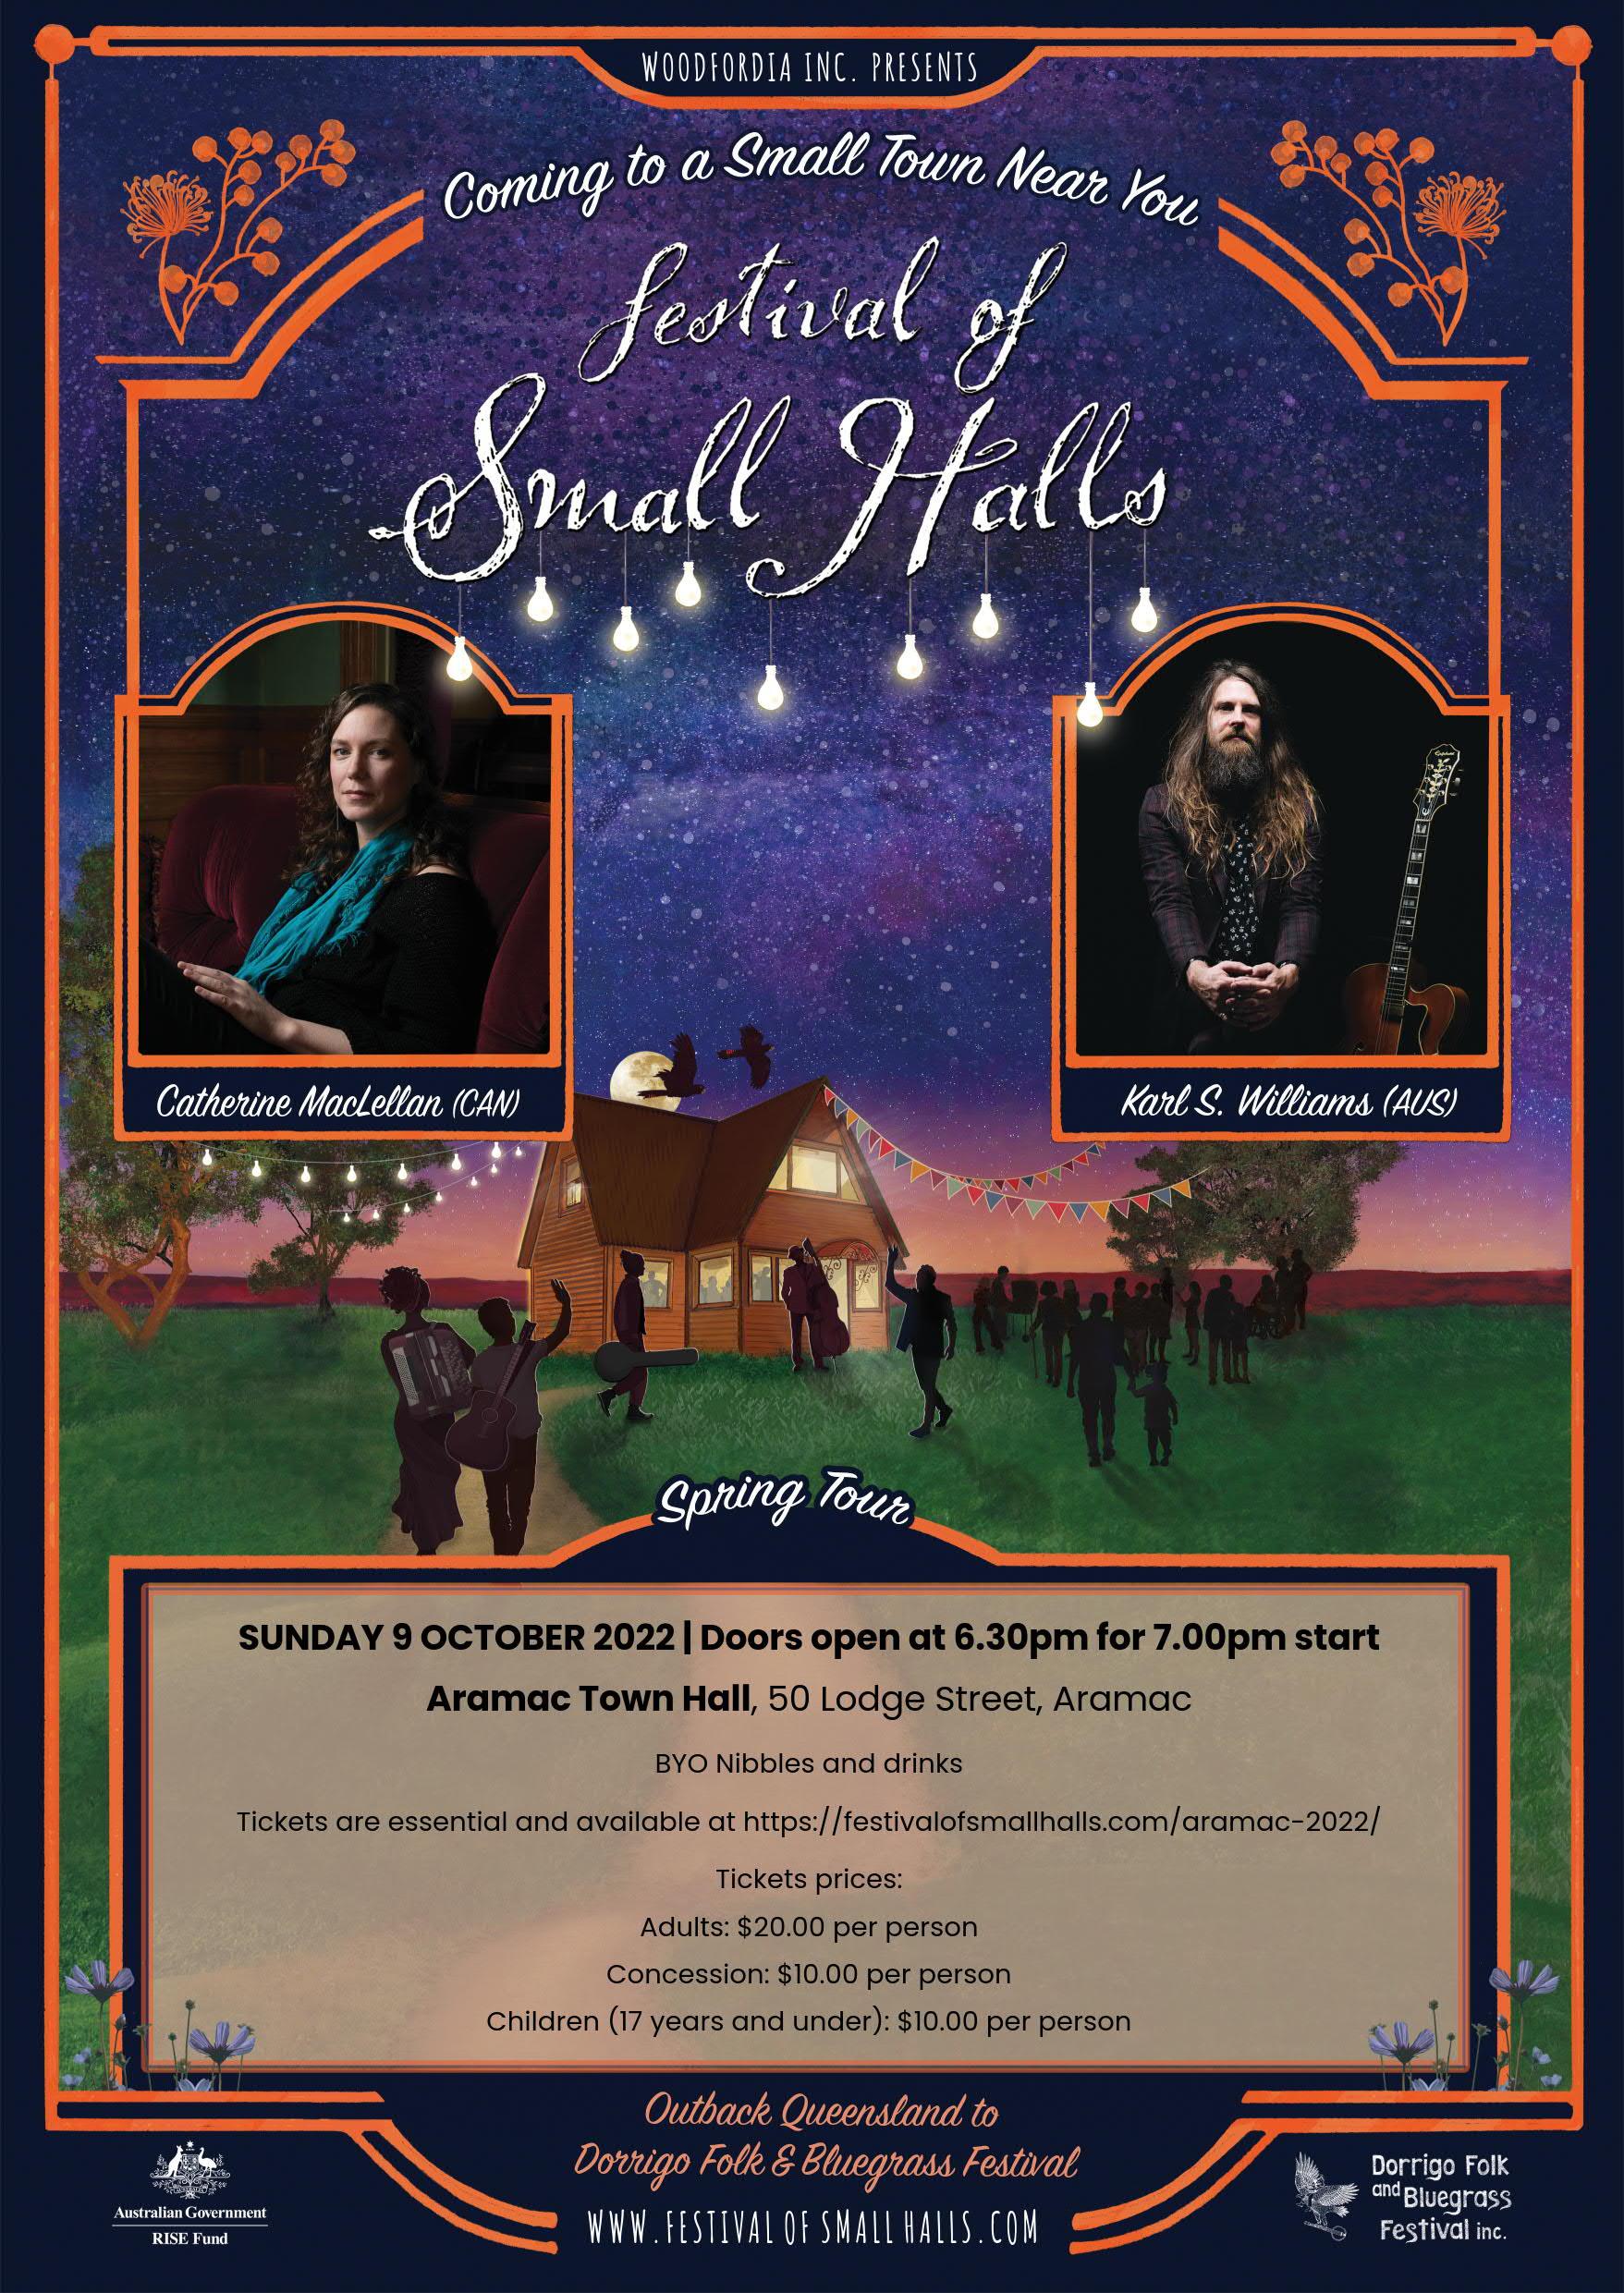 2022 Festival of Small Halls - Aramac, Sunday 9 October 2022